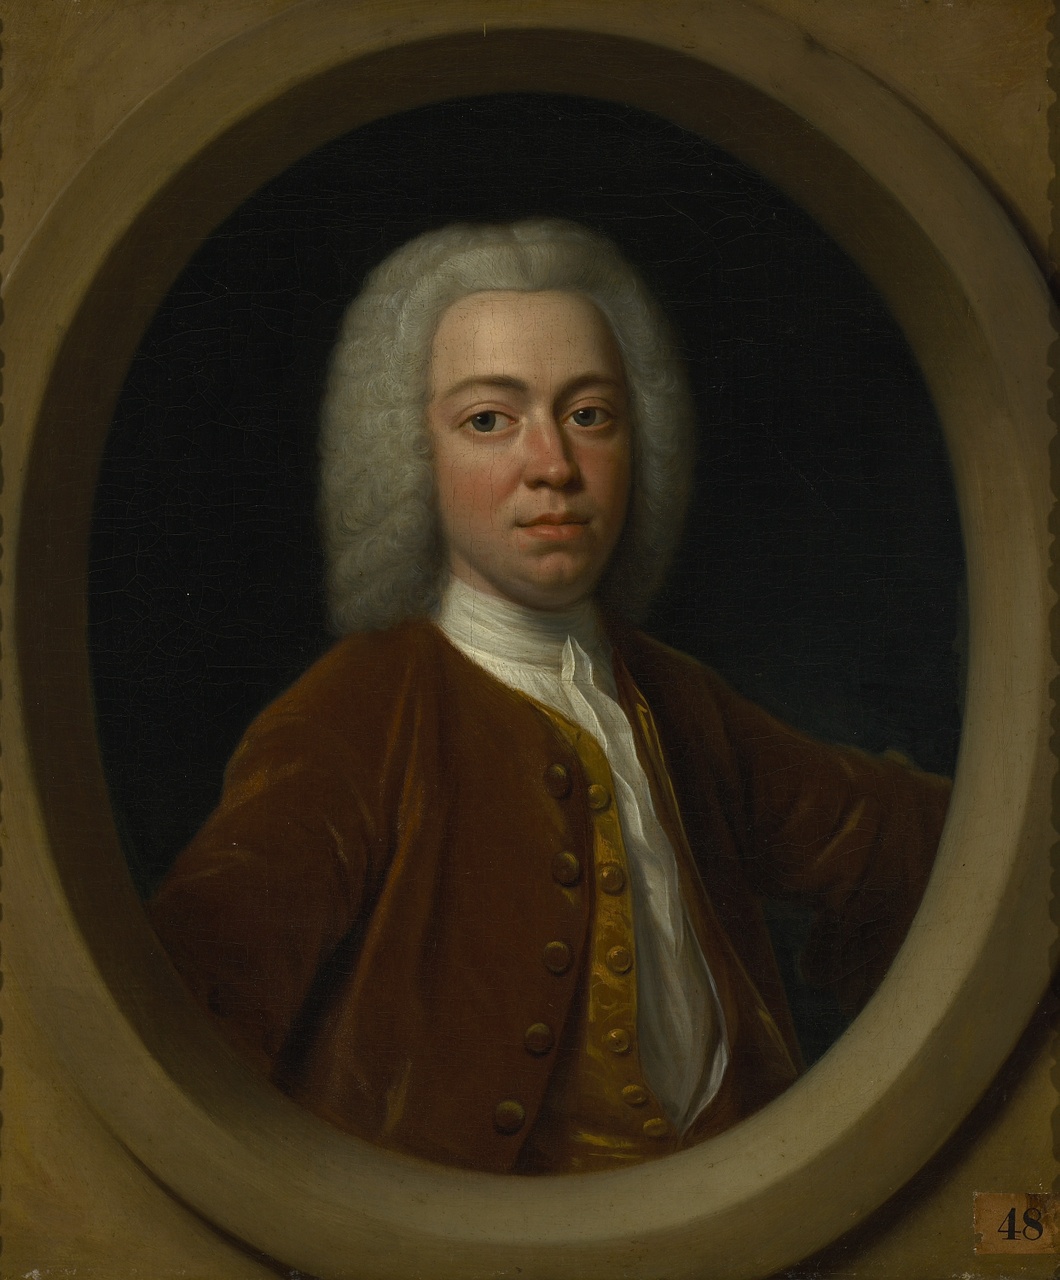 Mr. Jacob van Citters (1708-1792), Philip van Dijk